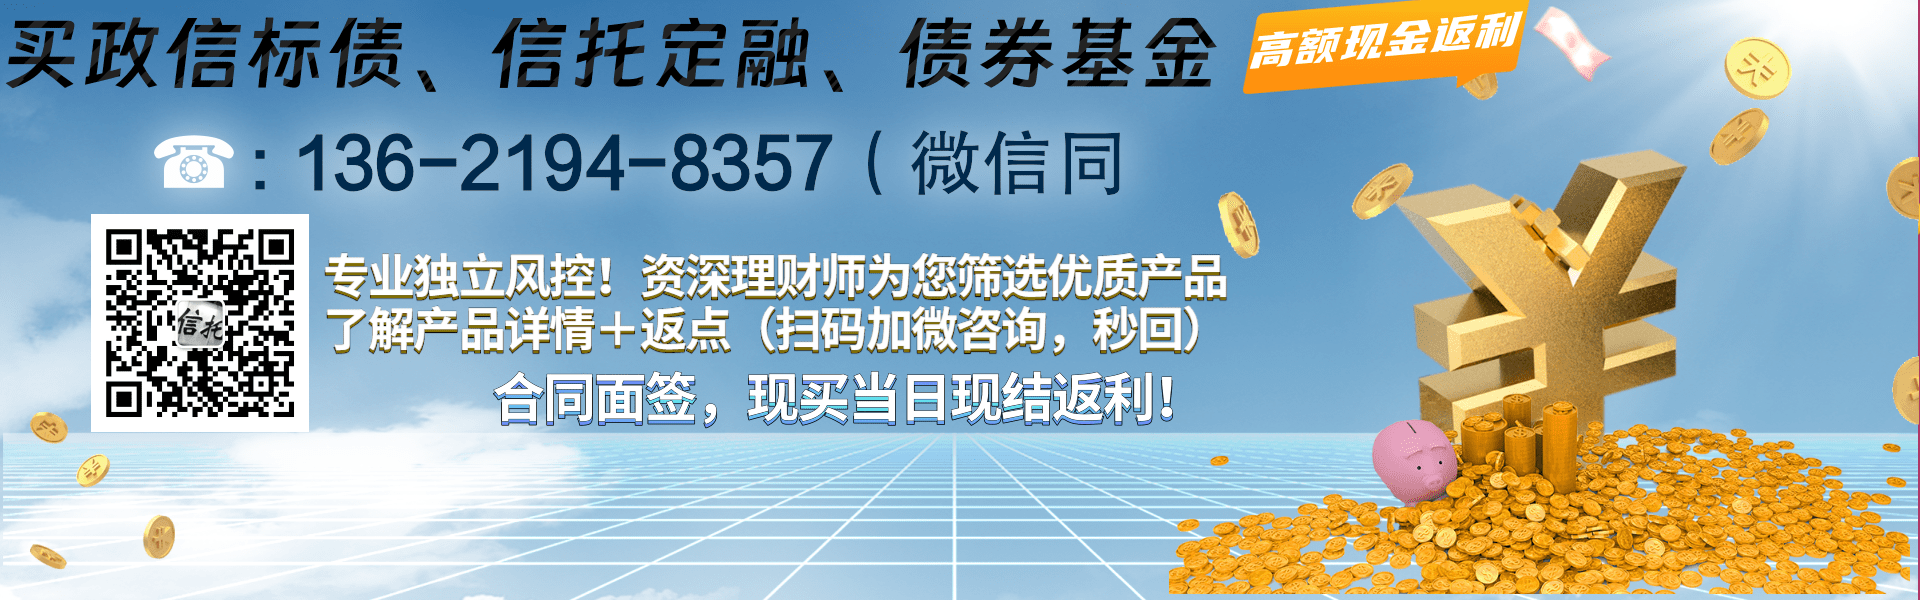 国企信托-01026号四川成都简阳标准债项目